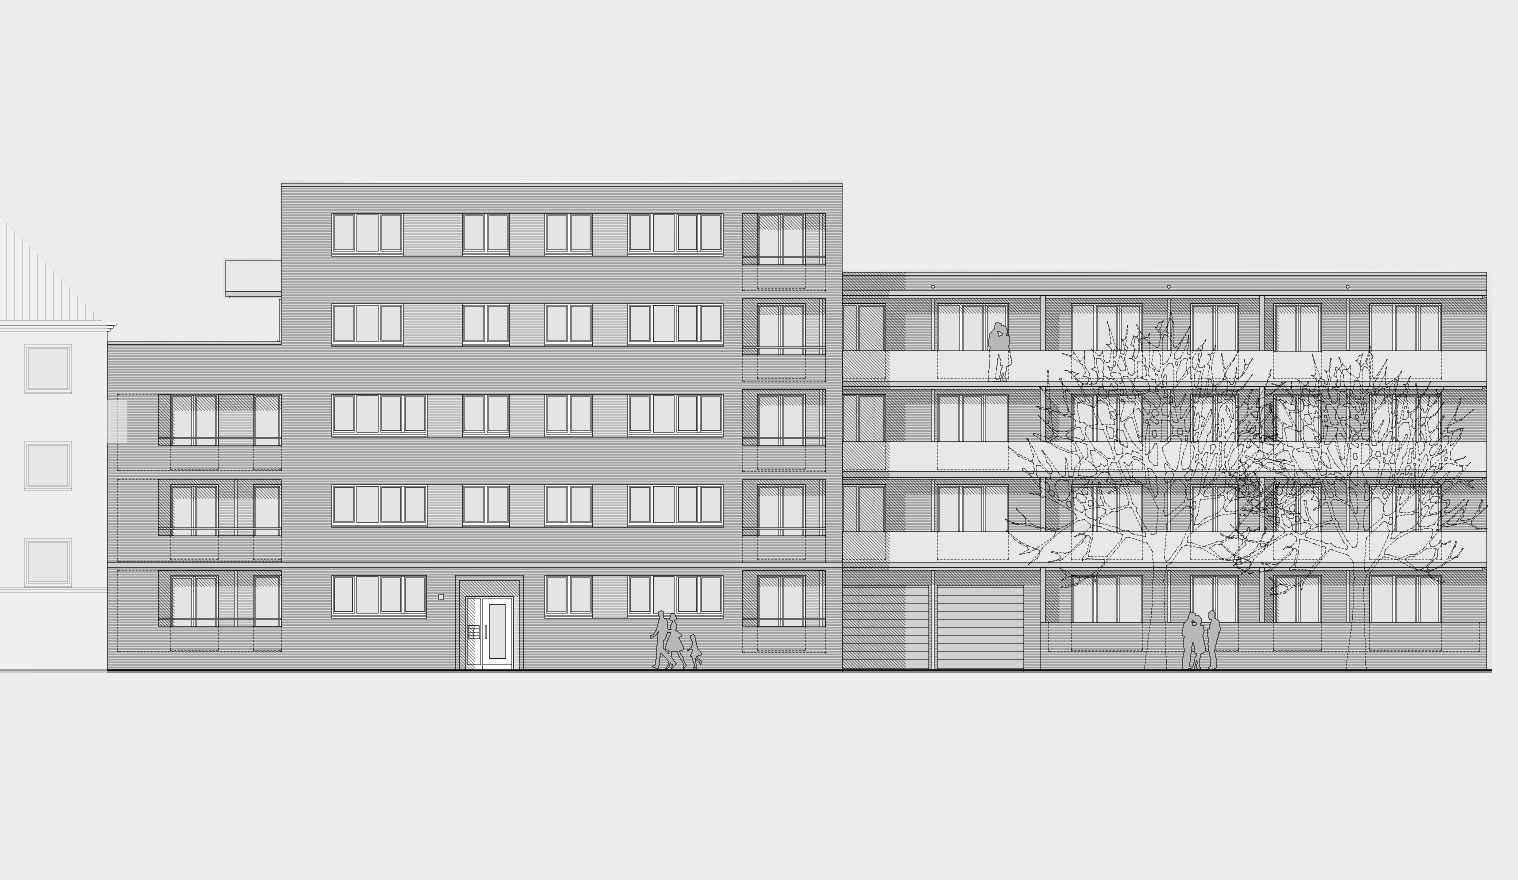 Architekturzeichnung - Diese Zeichnung zeigt ein Bauprojekt für Kapitalanleger in Hamburg Altona - Kühnehöfe